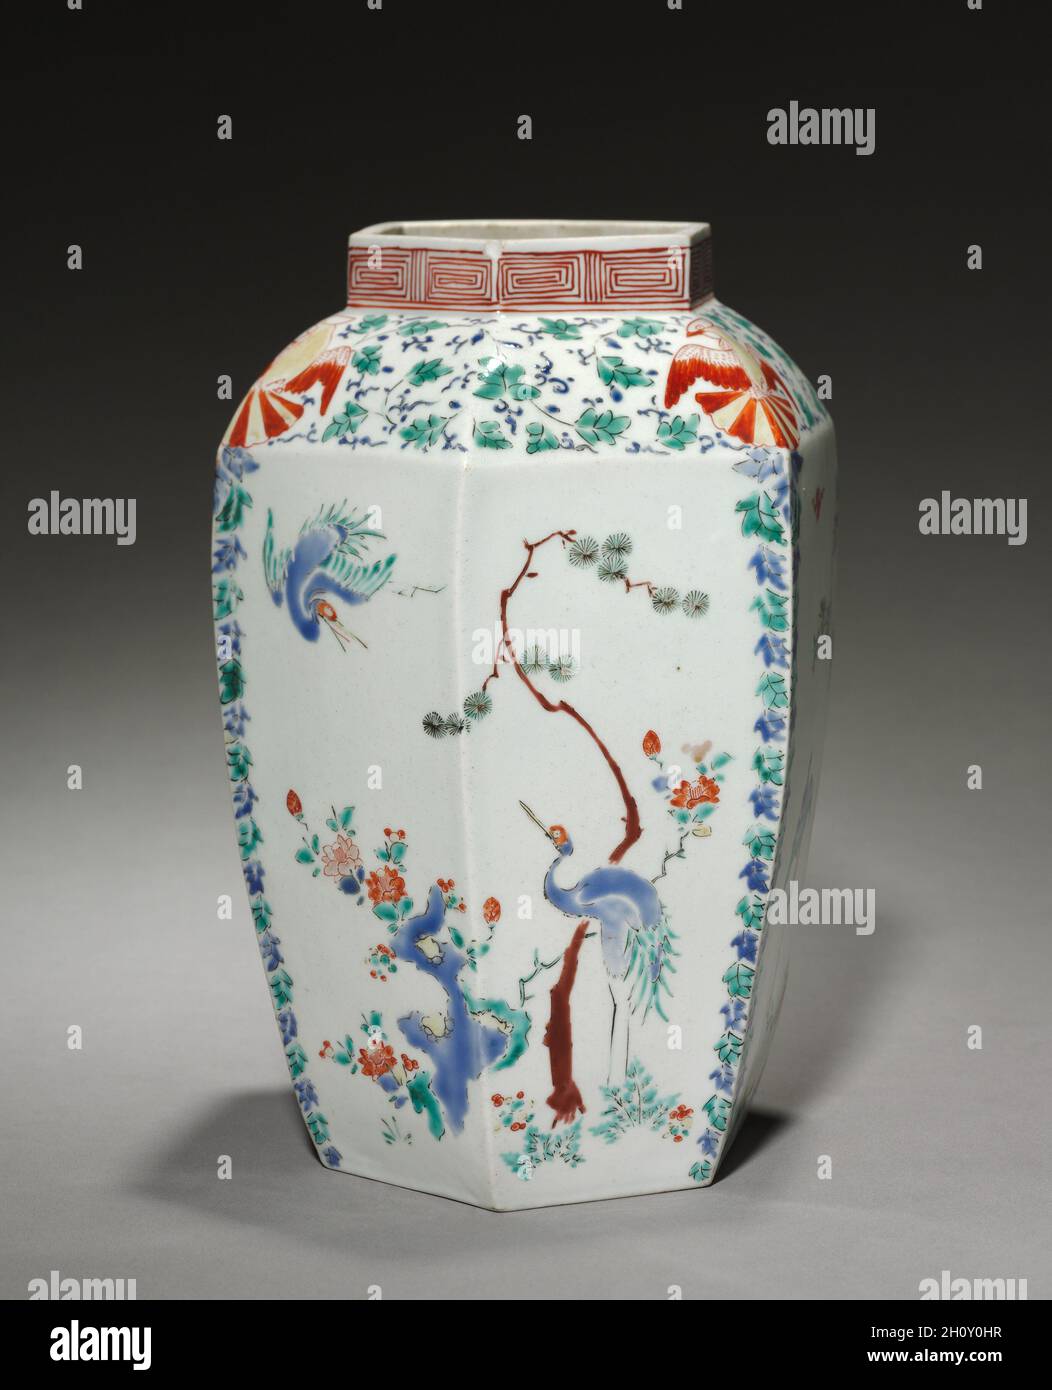 Sechseckiges Glas, Ende 1600. Japan, Edo-Zeit (1615-1868). Porzellan mit Emaille-Überglasur und Goldschmuck (Hizen-Geschirr, Kakiemon-Typ); insgesamt 26.8 x 18.6 cm (10 9/16 x 7 5/16 Zoll). Dieses Paar Gläser hatte ursprünglich gewölbte Deckel. Ihre imposante Größe, Form und das Dekor im chinesischen Stil kennzeichnen sie als Produkte, die für die europäischen Märkte in England, Holland, Frankreich und Deutschland hergestellt wurden. In der Tat sind viele ähnliche Beispiele in den Sammlungen von Museen und historischen Häusern in diesen Ländern zu sehen. Solche Kakiemon-Ware inspirierte auch die heimische Porzellanproduktion in Europa im 18. Und 19. Jahrhundert. Stockfoto